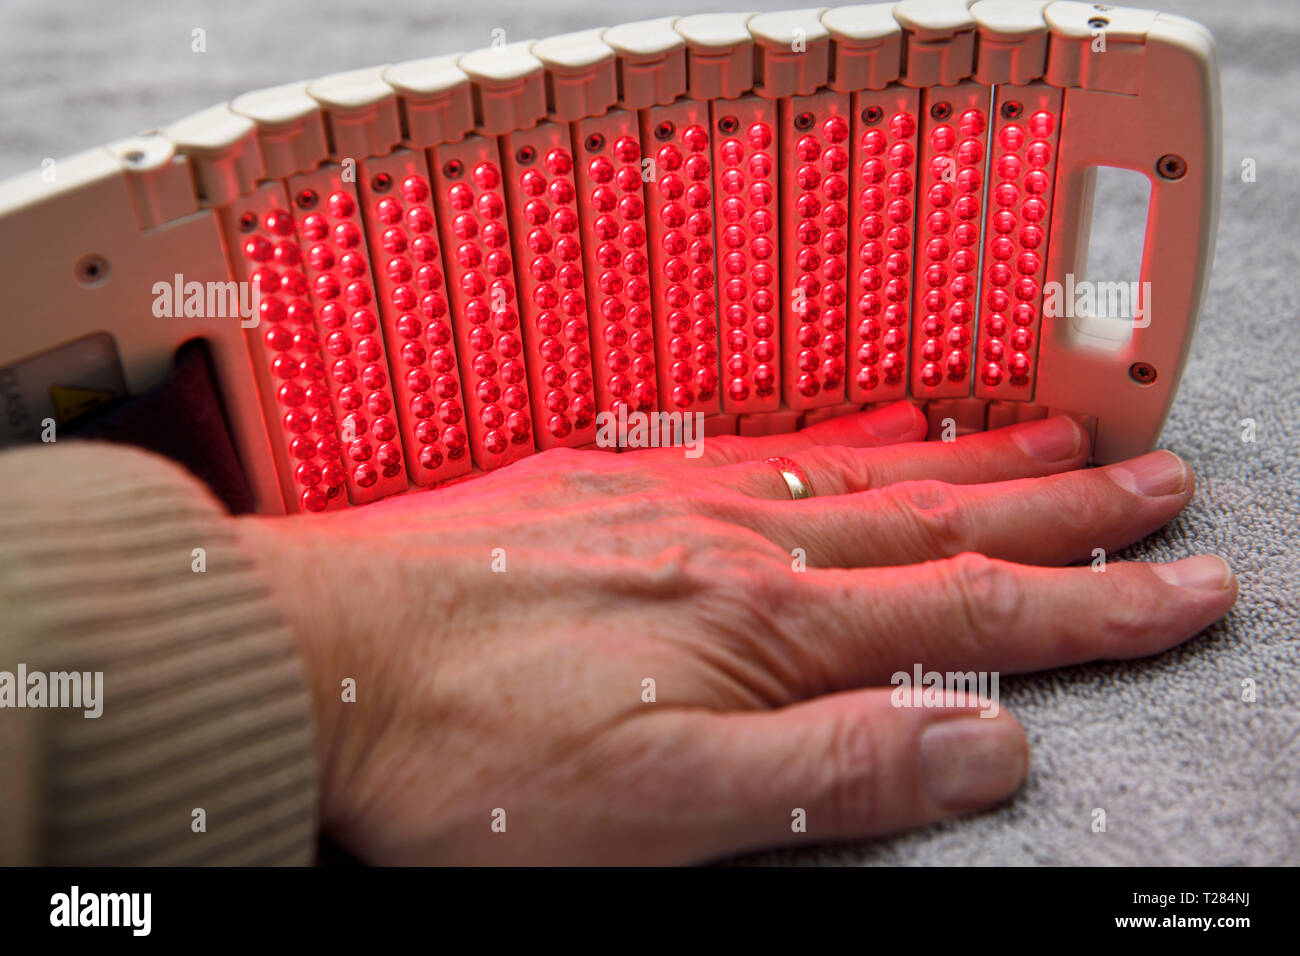 Cold laser LED array pad traitement pour la guérison et la thérapie de la main Banque D'Images